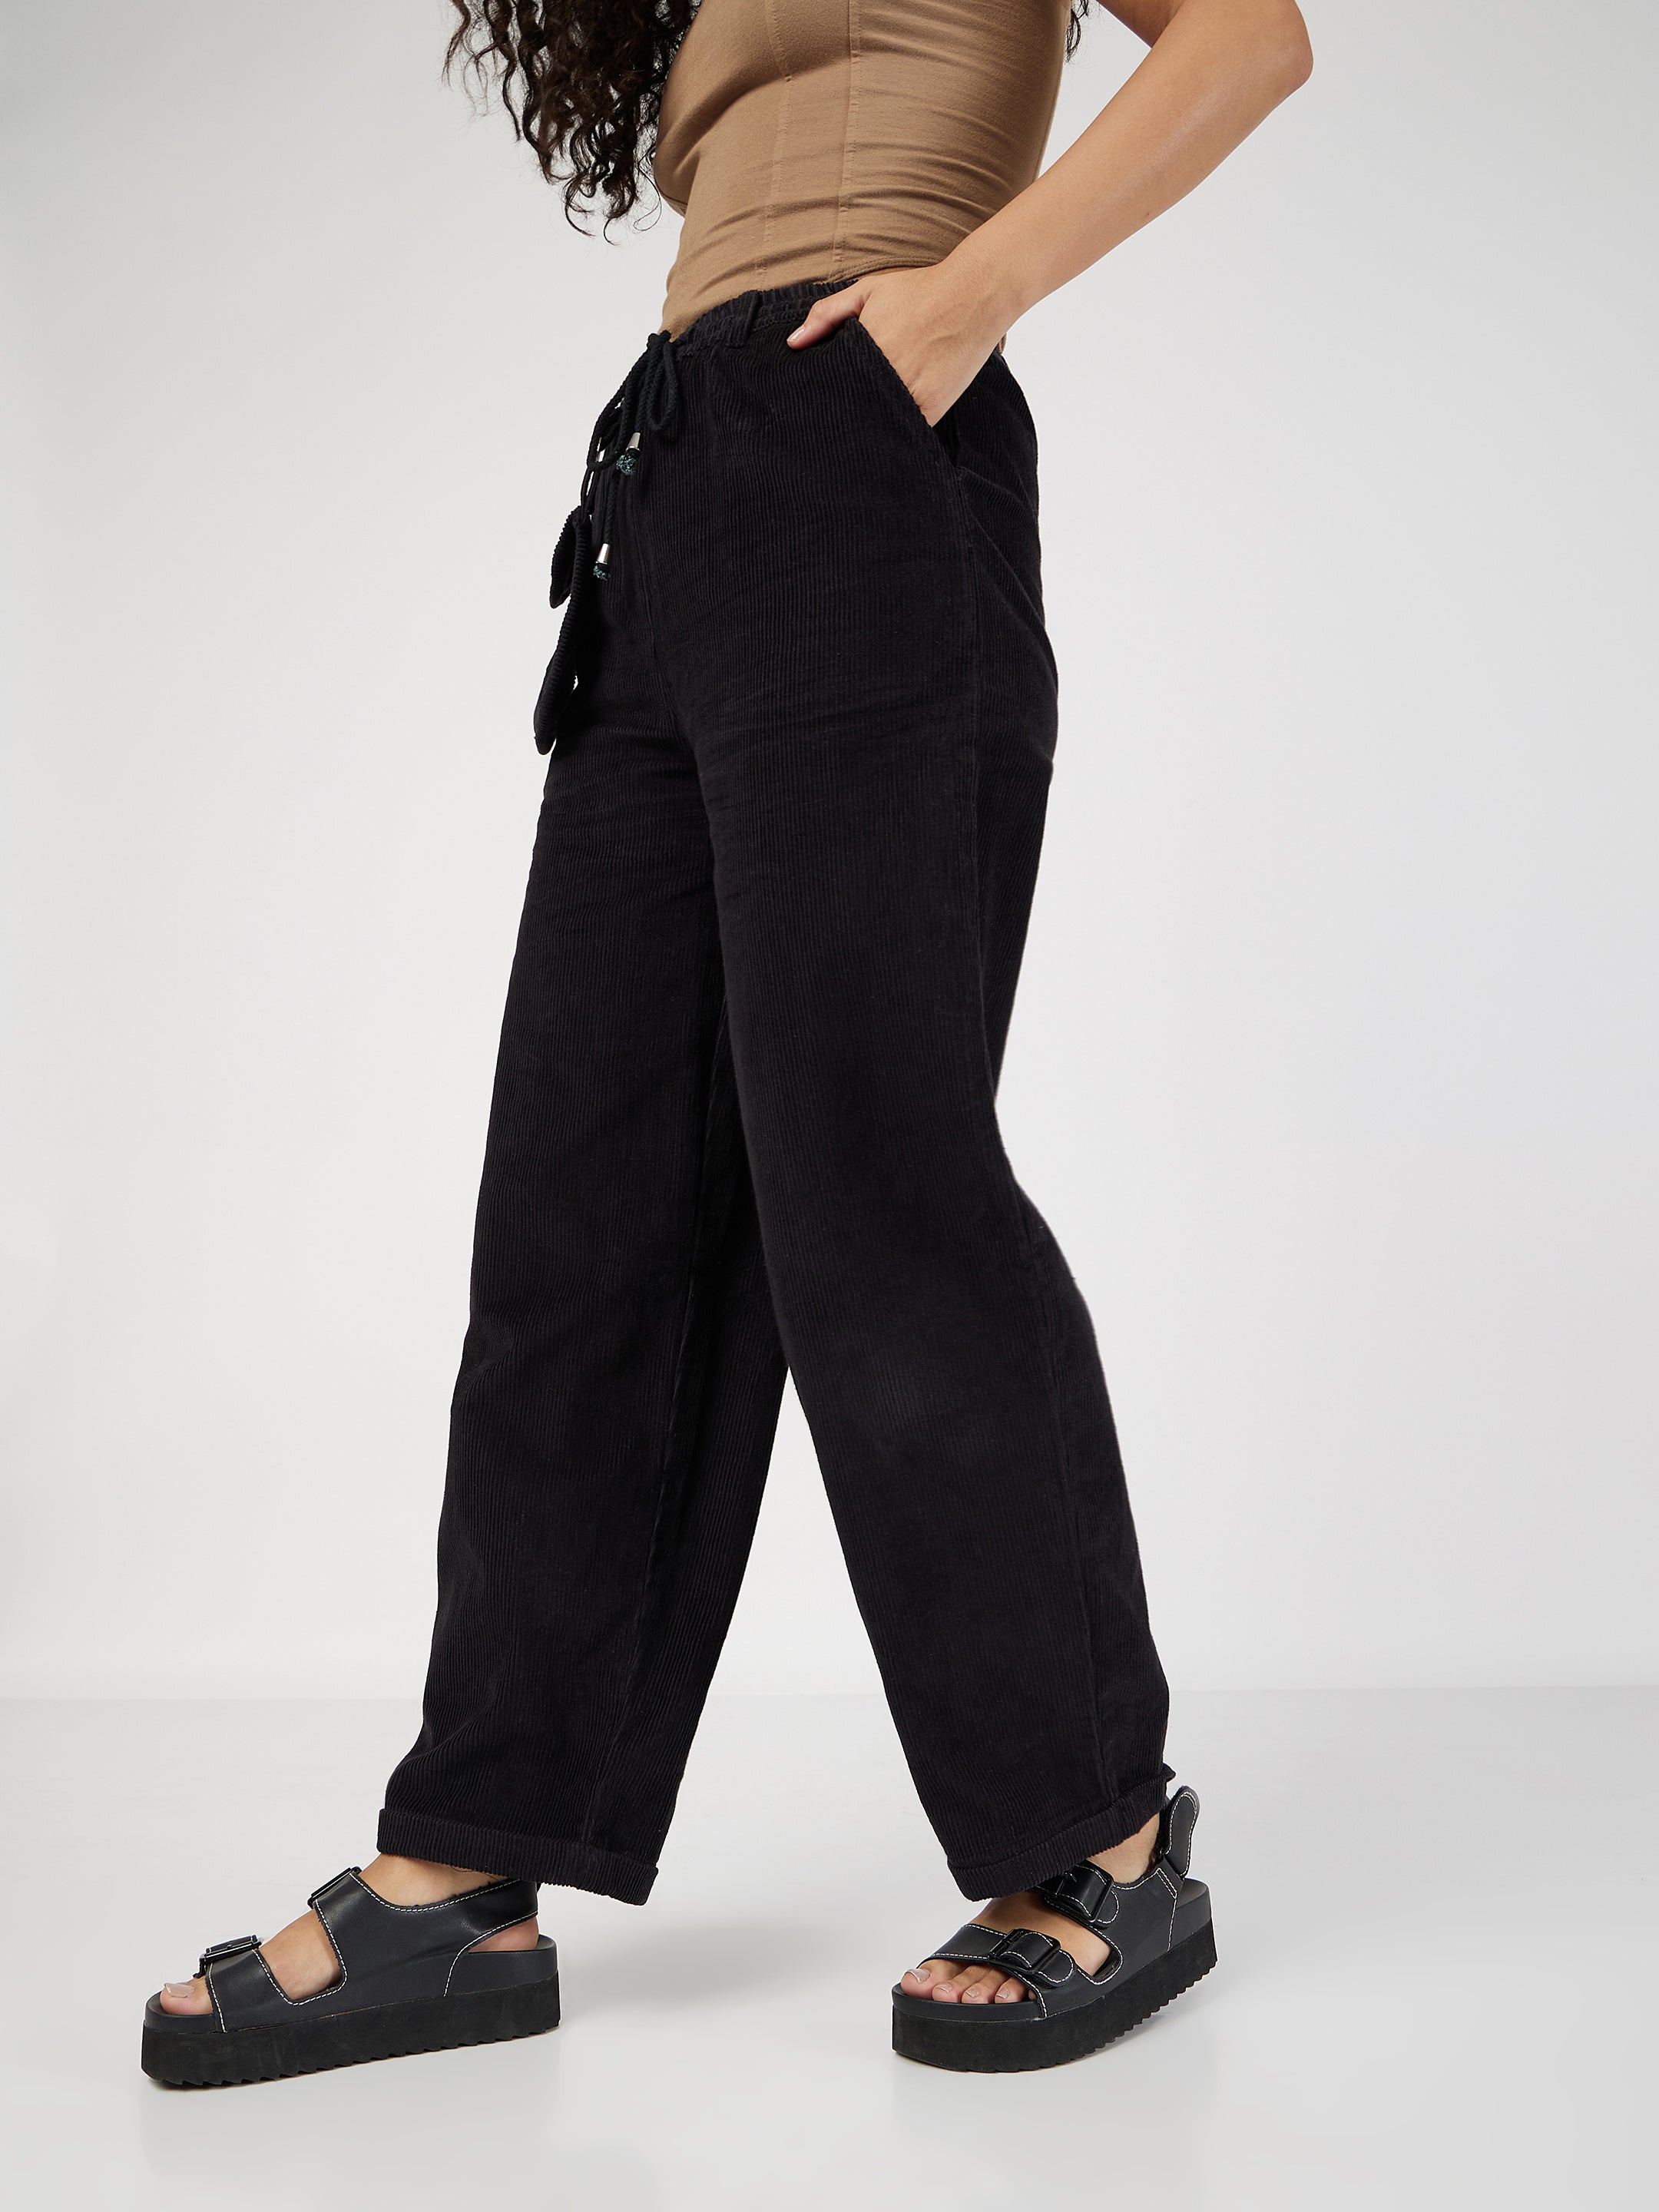 Women's Black Corduroy Pouch Pocket Drawstring Pants - Lyush